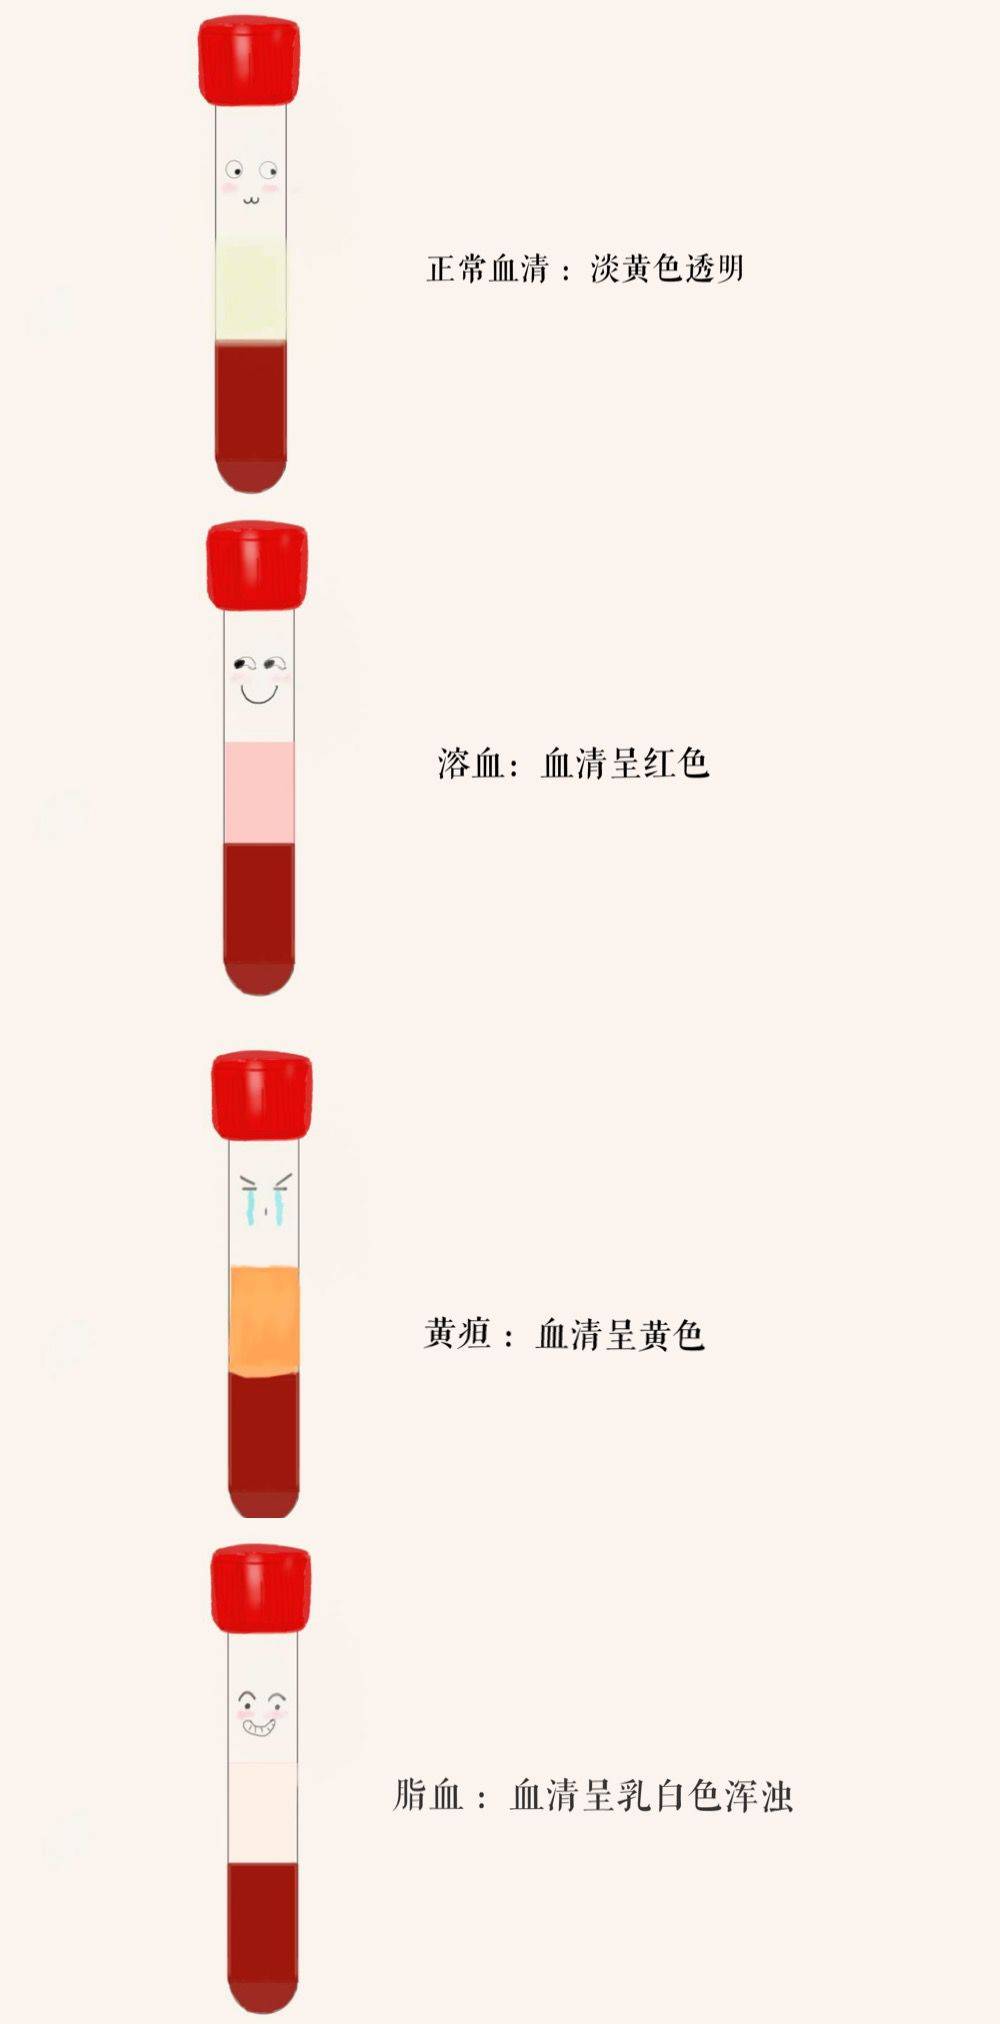 血清是血液离体凝固后分离出来的液体,主要用于化学和免疫学等检测